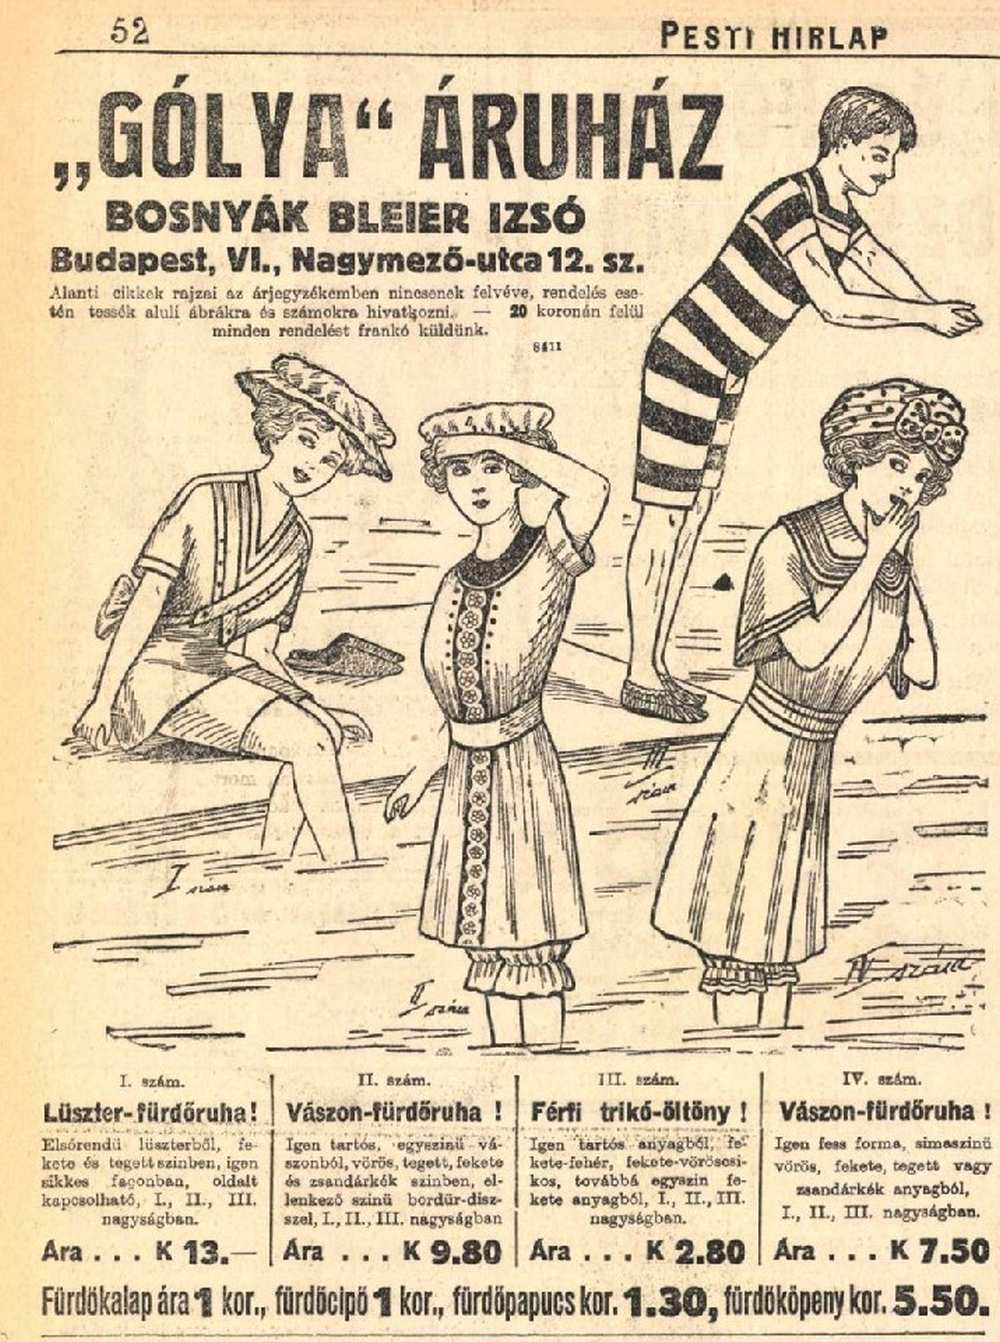 A Gólya áruház reklámja 1911-ből. In: Pesti Hírlap, 33. évf. 149.sz., 1911. június 15. – Törzsgyűjtemény https://nektar.oszk.hu/hu/manifestation/1018755